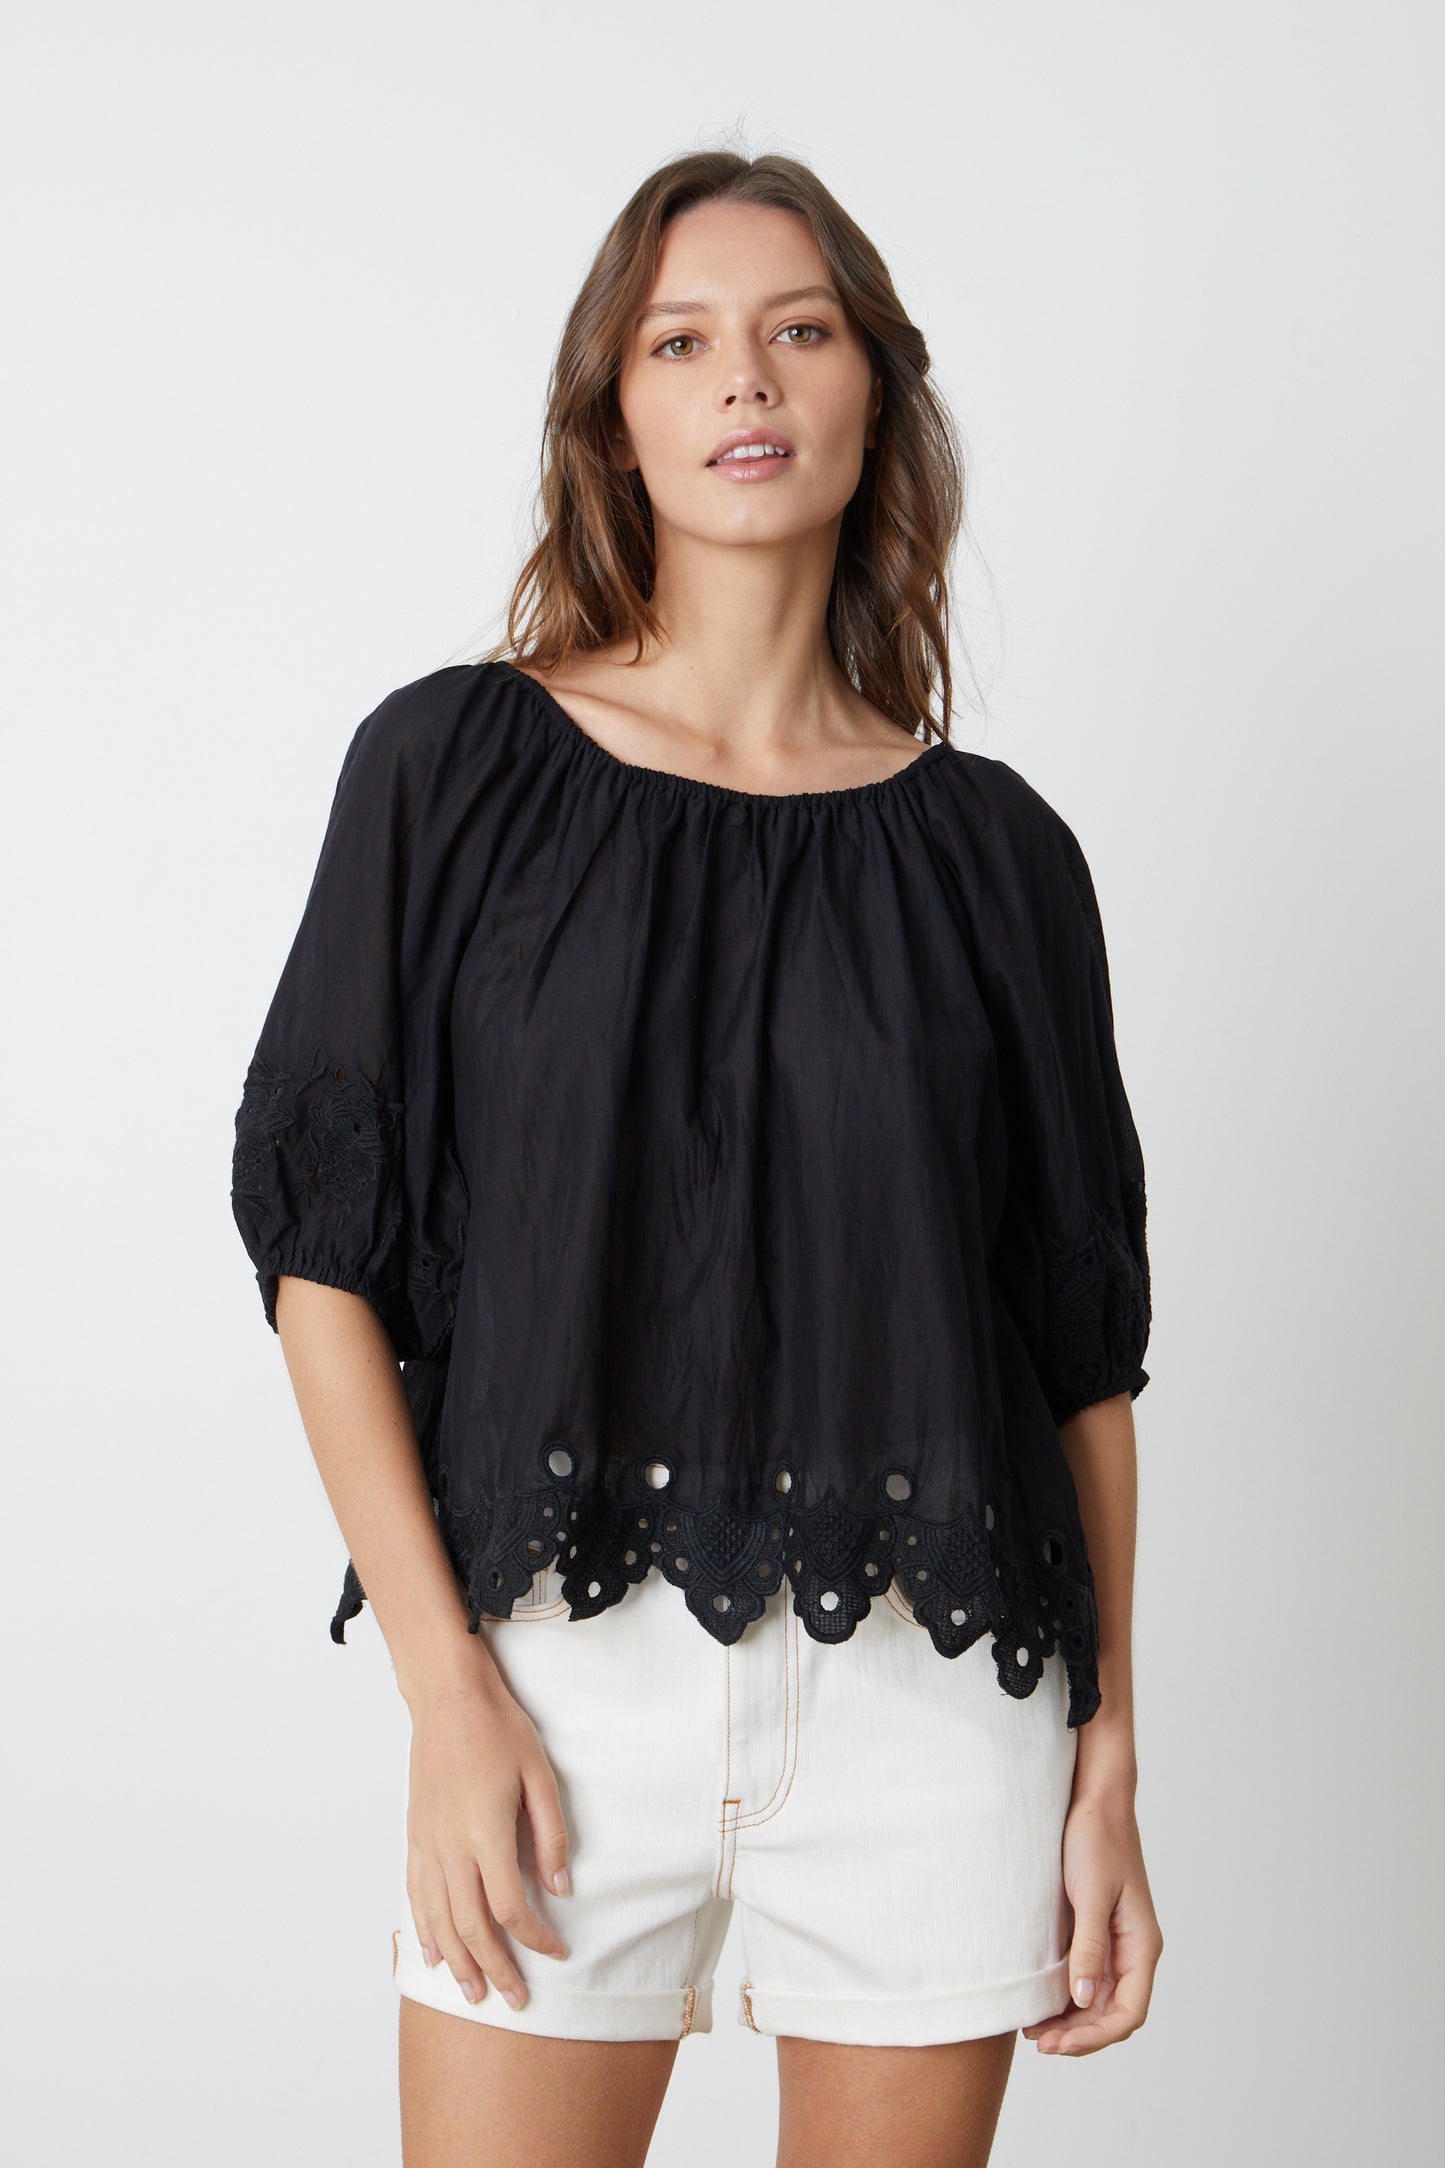 A model wearing a black Velvet by Graham & Spencer ABIGAIL SCHIFFLI EYELET BLOUSE and white shorts.-26577408000193